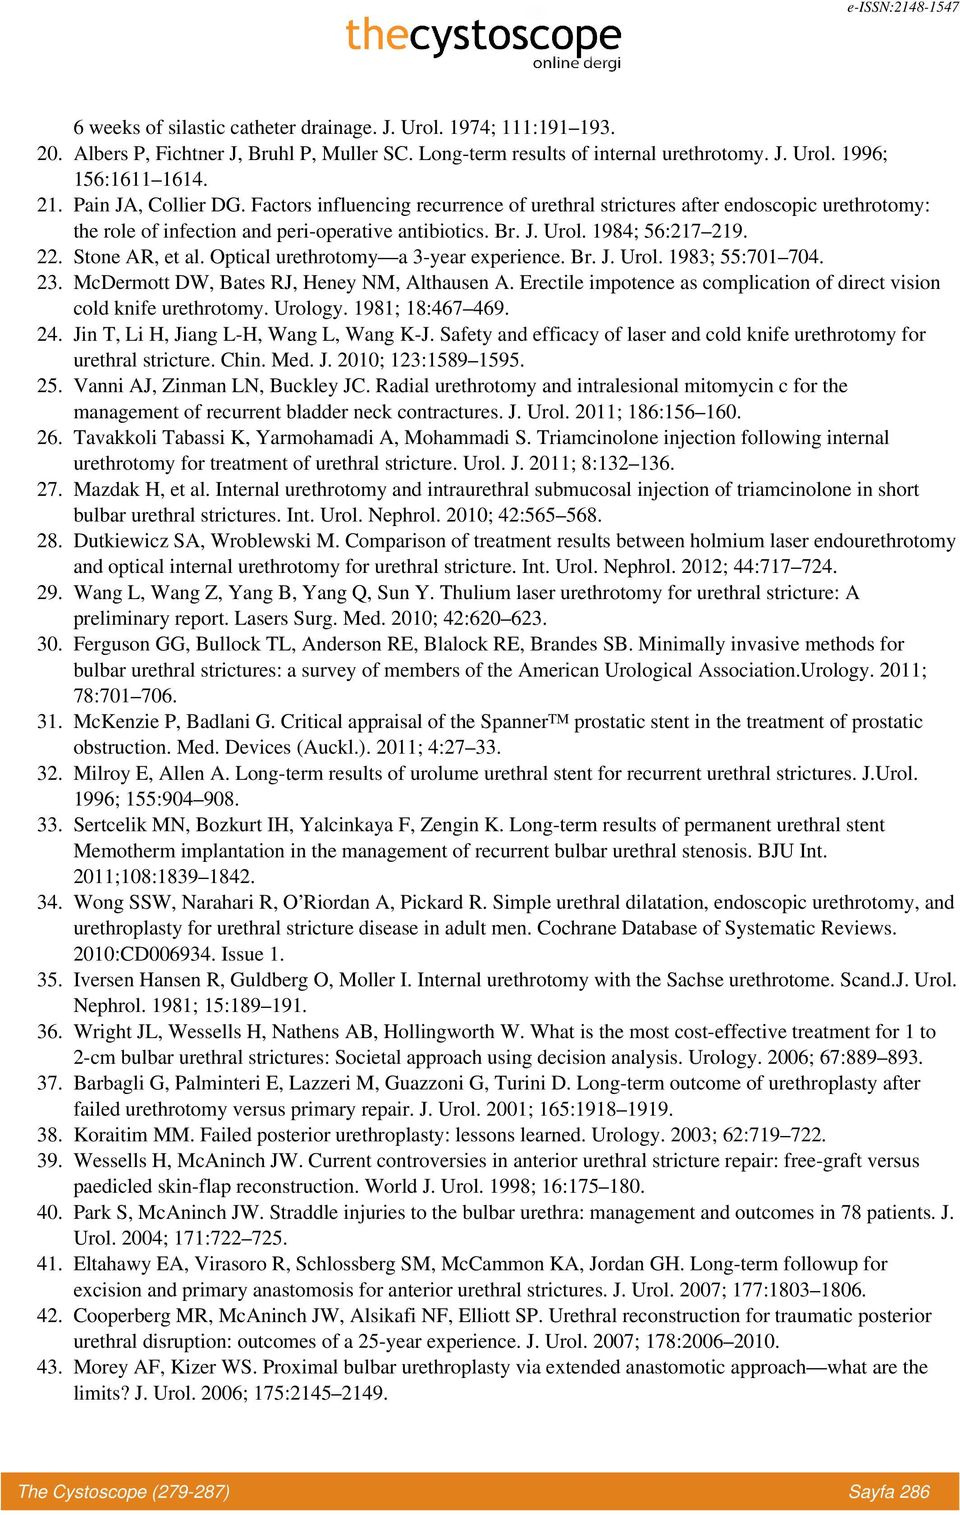 Stone AR, et al. Optical urethrotomy a 3-year experience. Br. J. Urol. 1983; 55:701 704. 23. McDermott DW, Bates RJ, Heney NM, Althausen A.